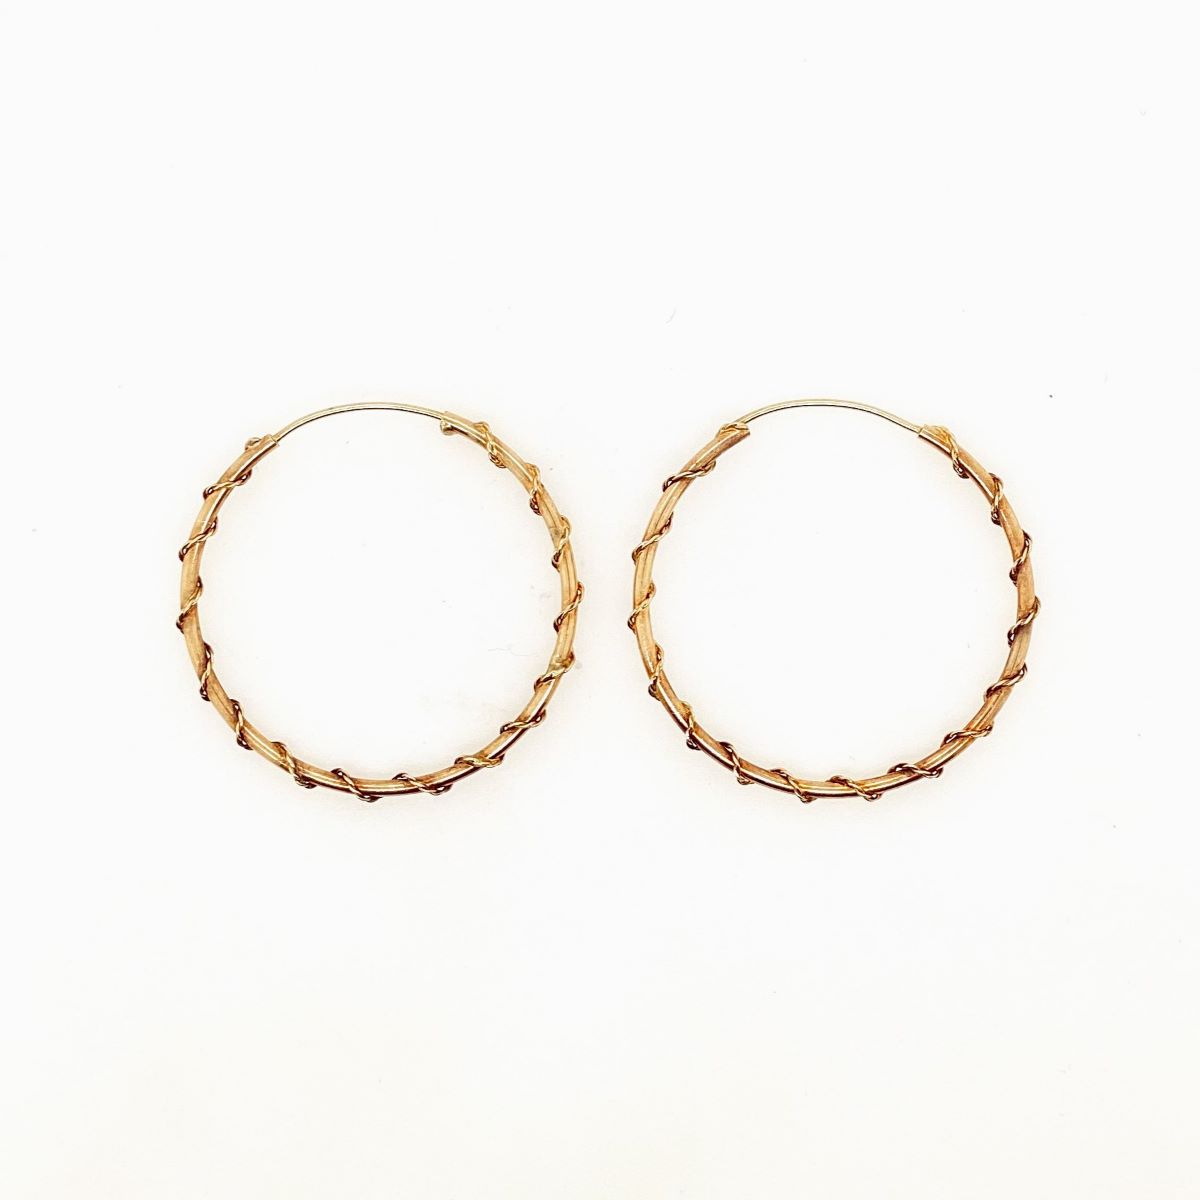 Vintage Gold Twisted Hoop Earrings